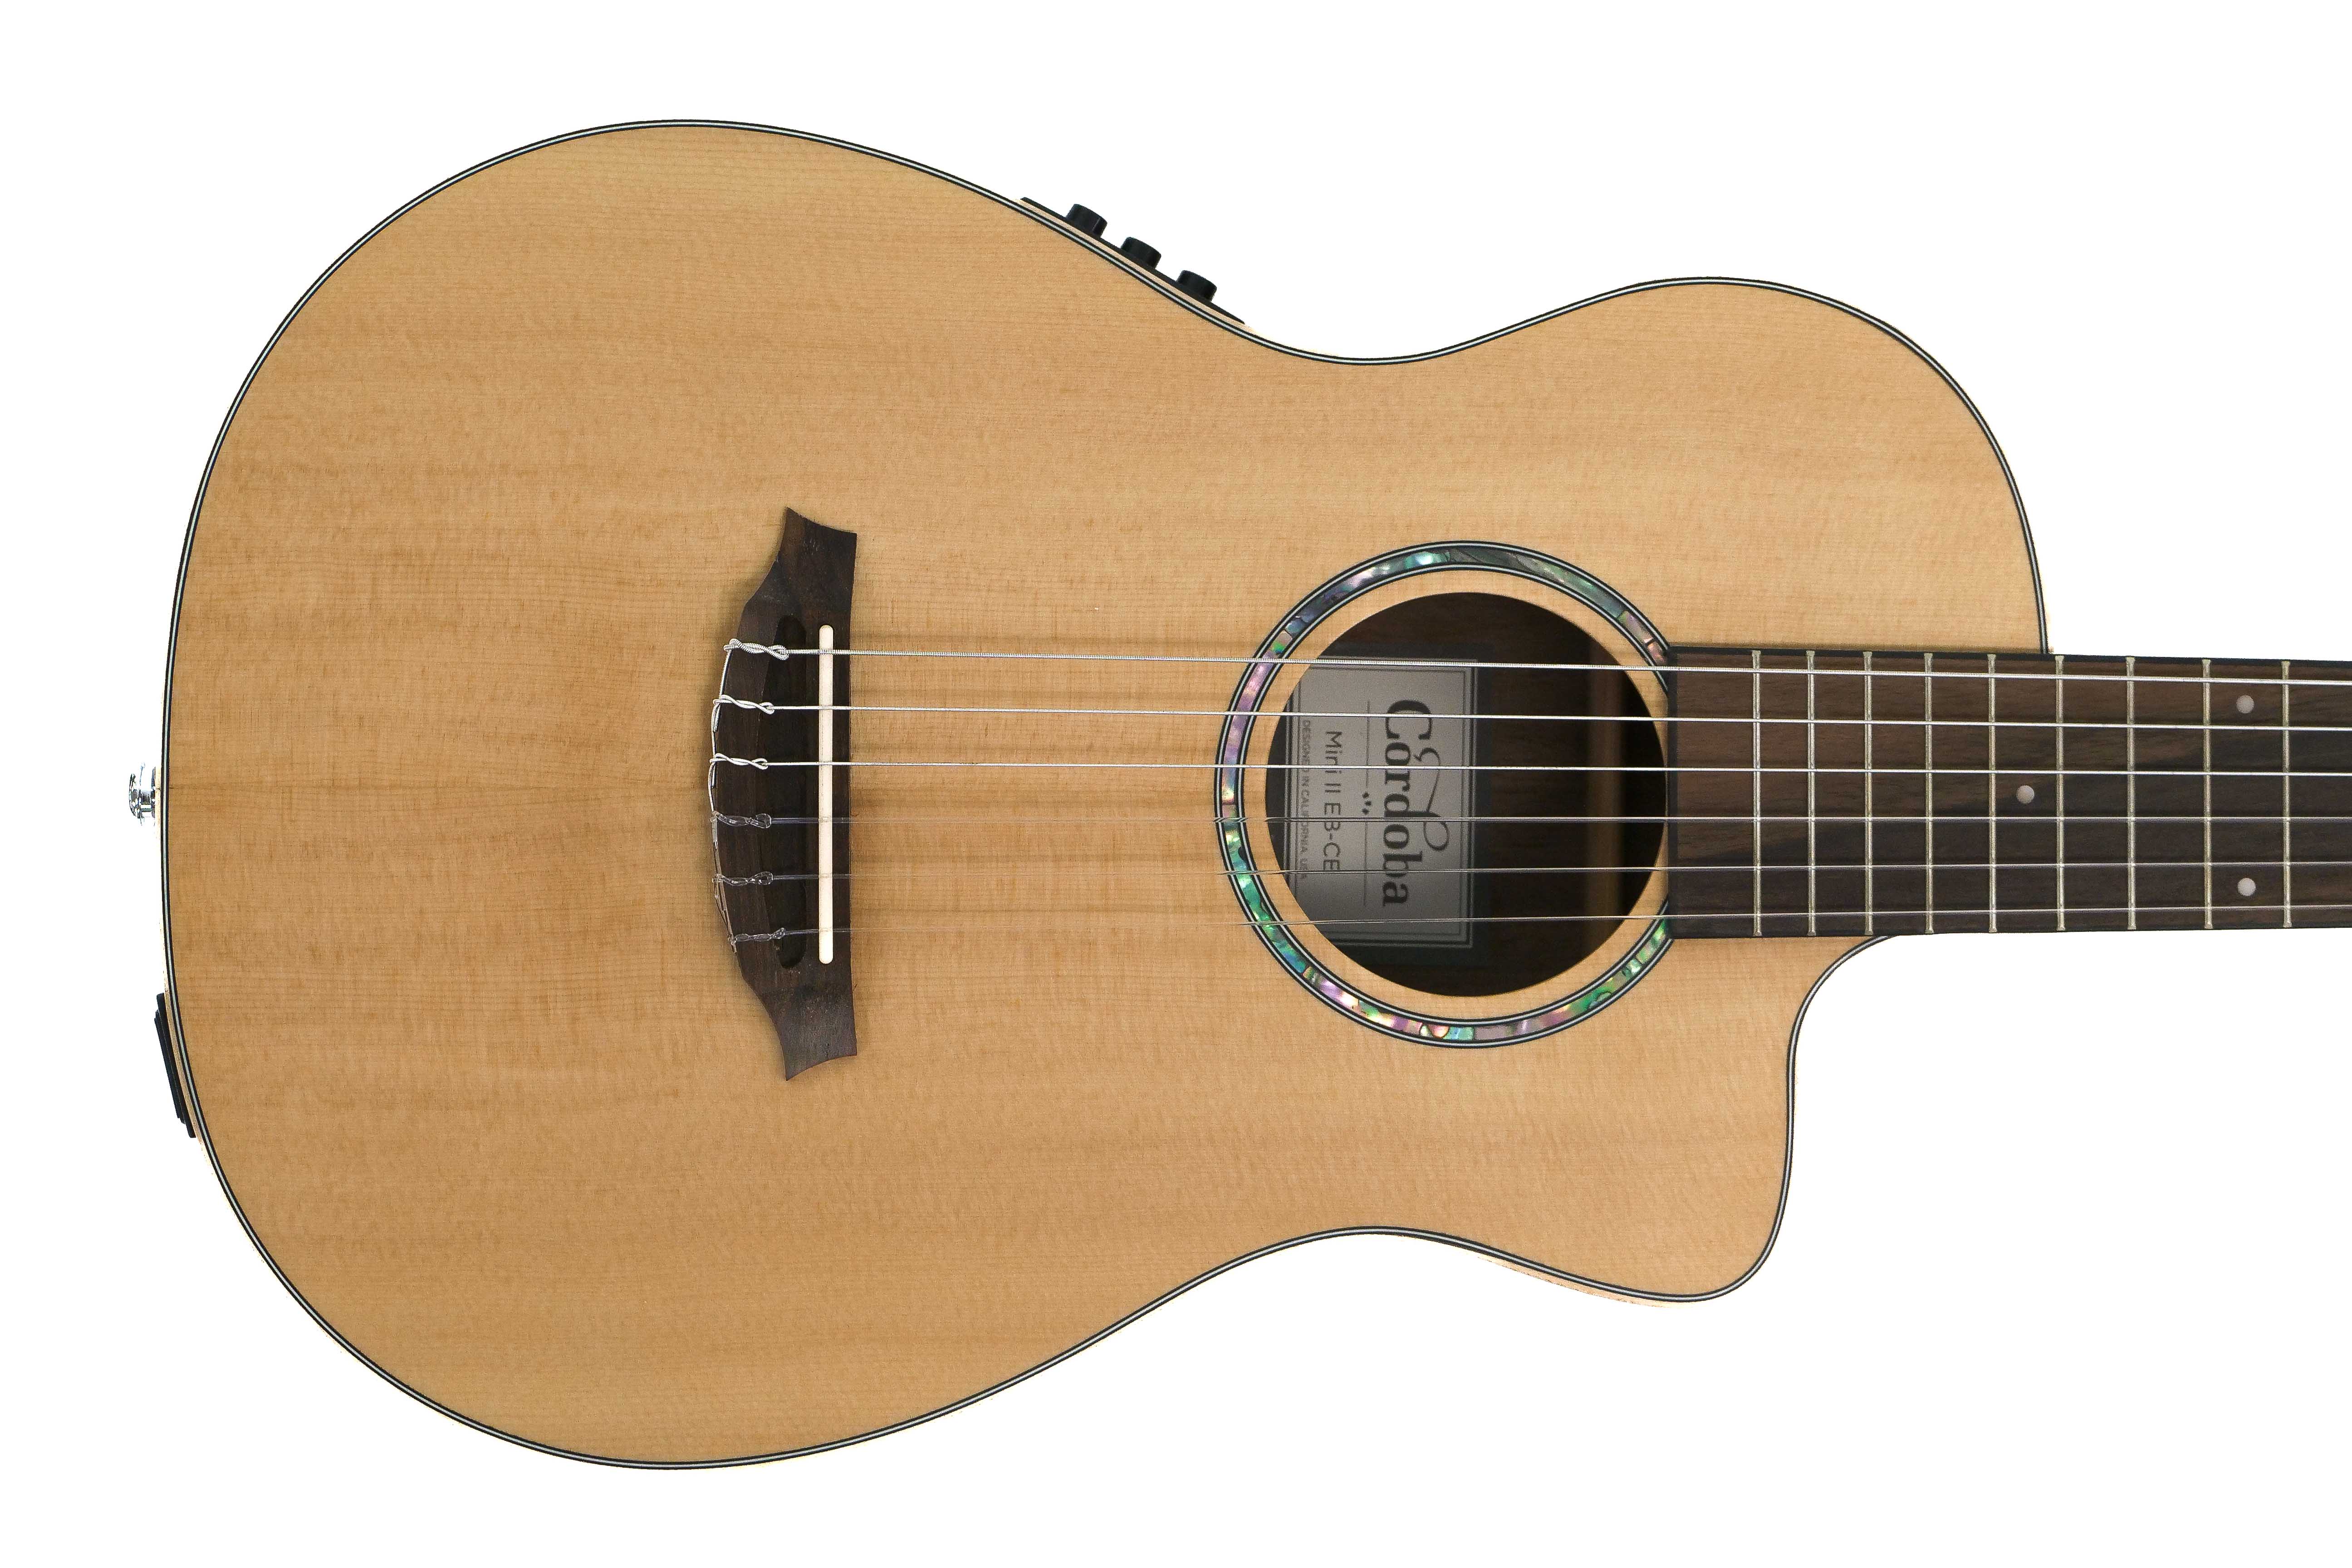 Cordoba Mini II EB-CE Travel Size Guitar Solid Spruce Top Striped Ebony "Granada" Tuned E to E